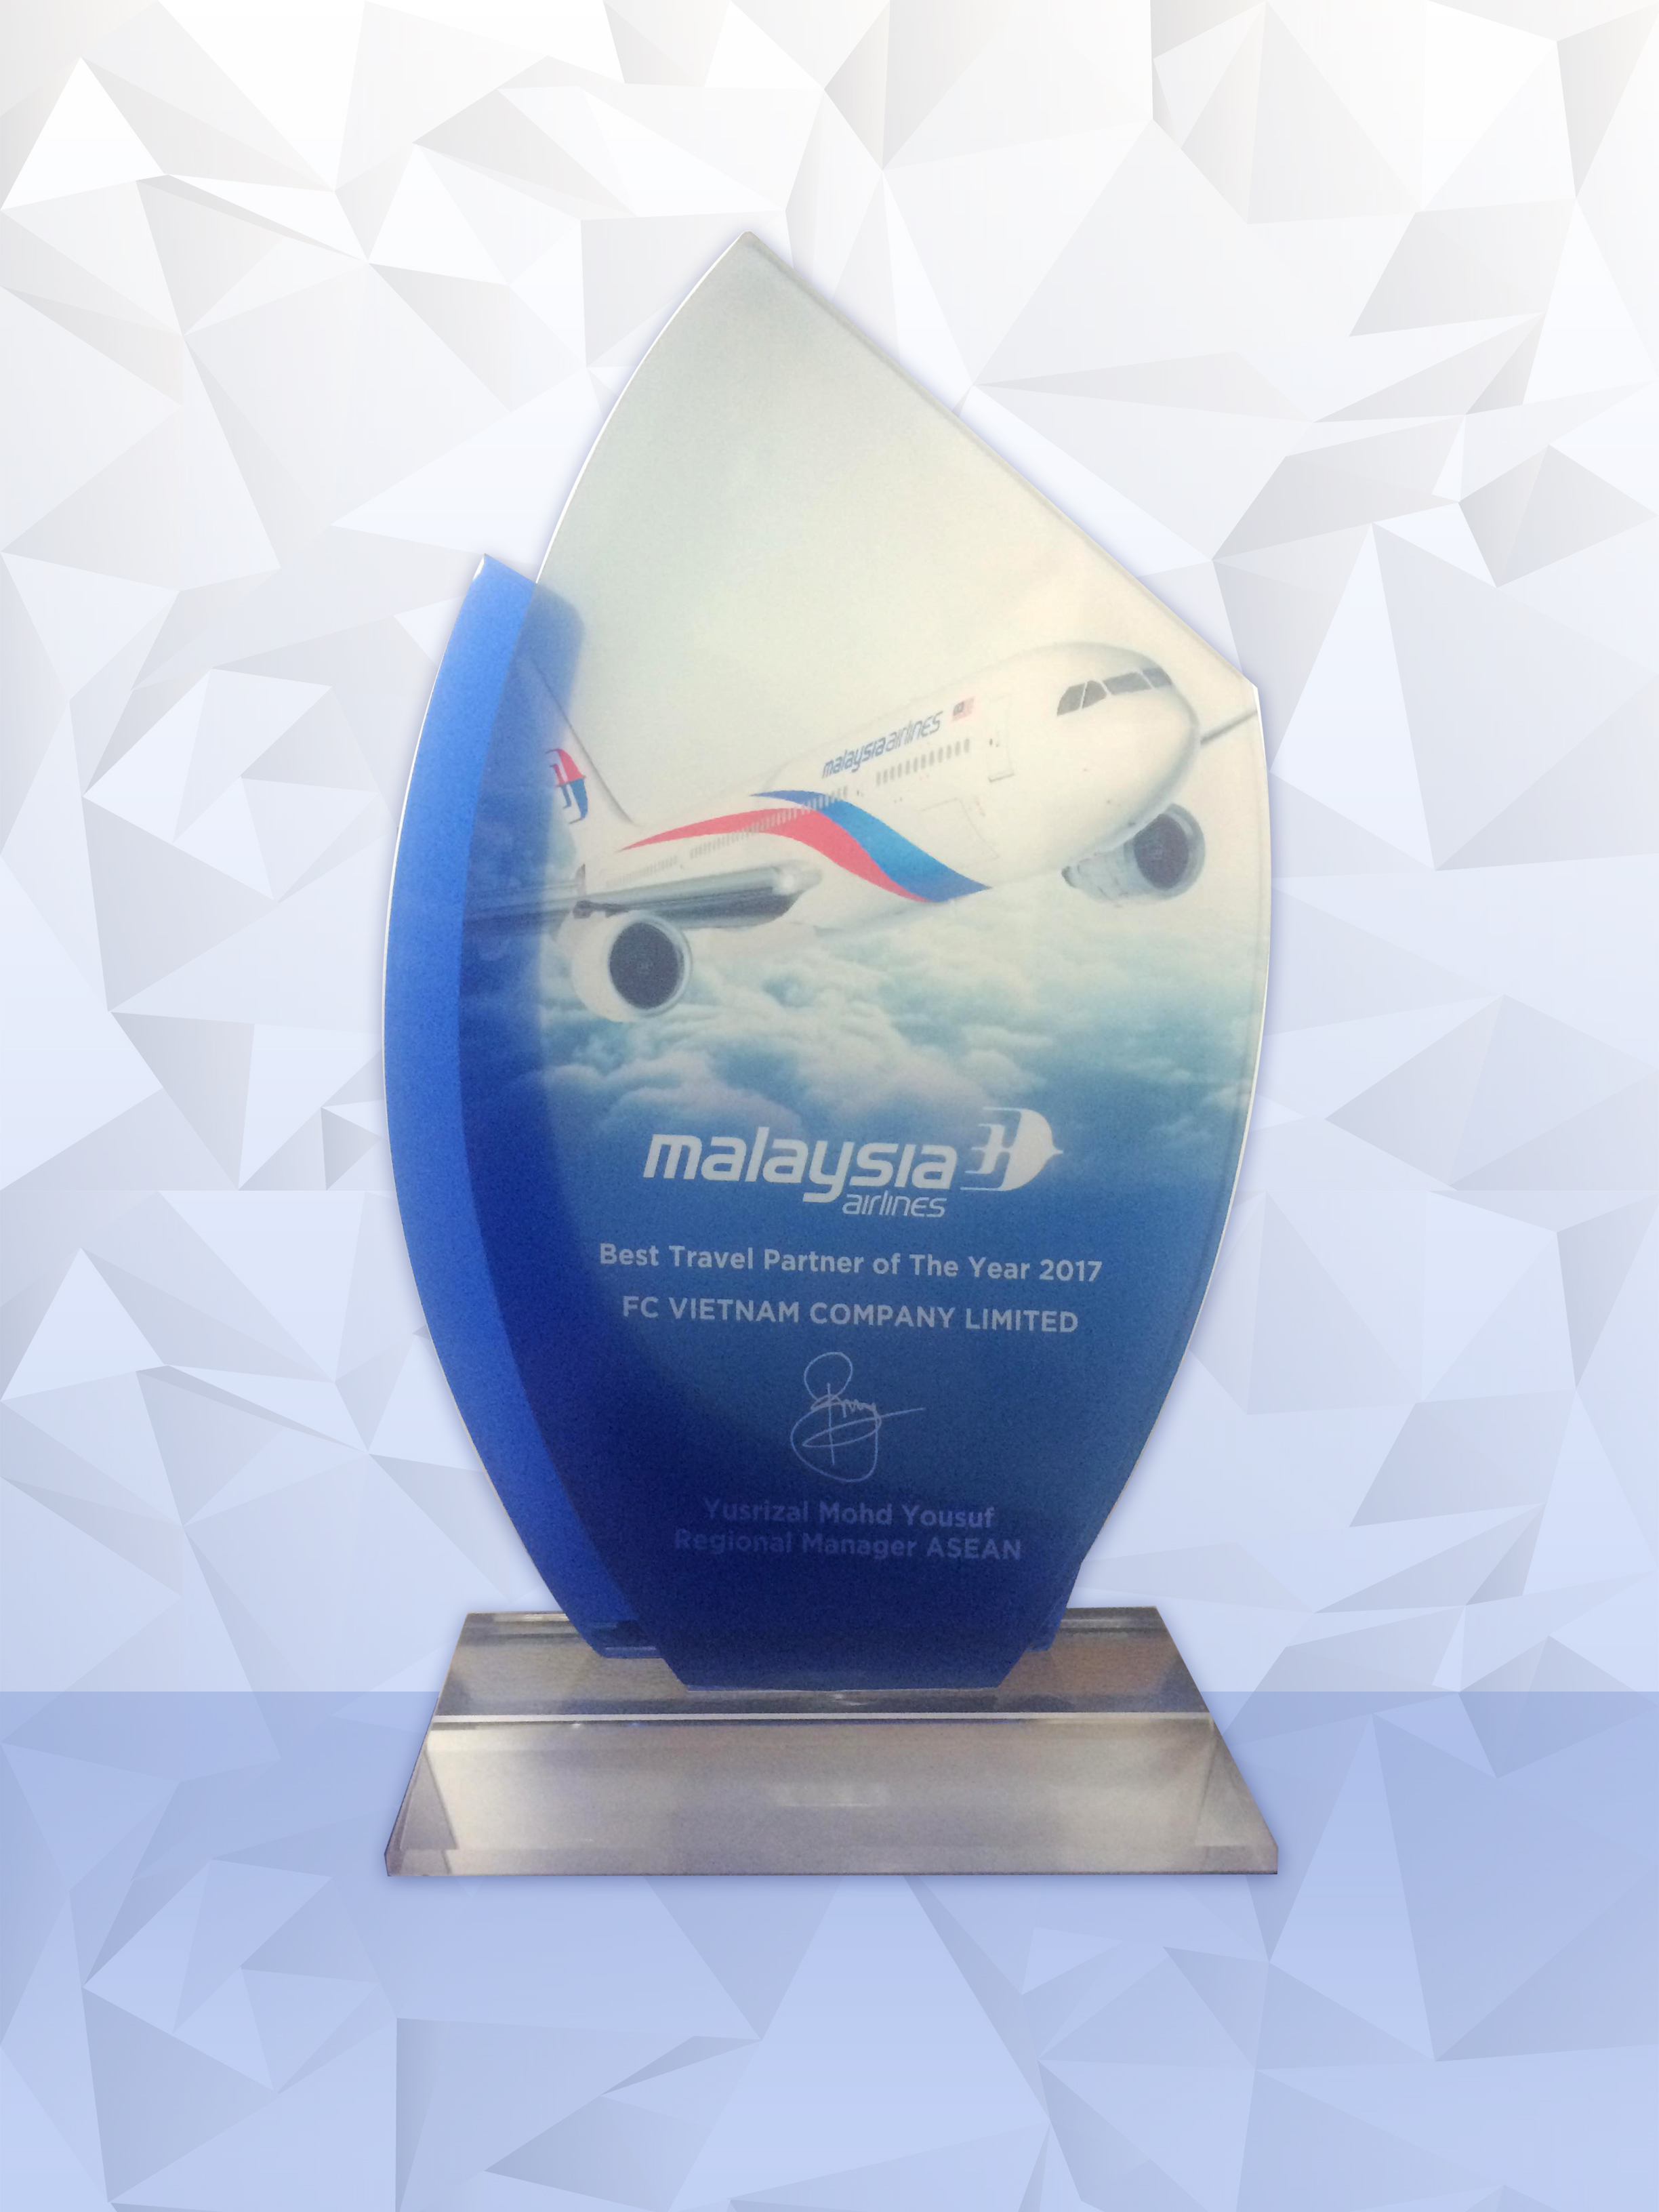 🎁 🎁 🎁 Congratulation to F.C Việt Nam from Malaysia Airlines ! 🎉 🎉 🎉 🔔 🔔 🔔 Vậy là một năm cũ sắp qua, một năm mới sắp đến, mọi cố gắng và nỗ lực của F.C Việt Nam trong suốt thời gian qua một lần nữa đã được ghi nhận. Những gì F.C Việt Nam đạt được ngày hôm nay là nhờ có sự ủng hộ và tin tưởng của mọi Quý khách hàng, chúng tôi xin gửi tới mọi Quý khách lời cám ơn chân thành nhất. 🍀 🍀 🍀  💙 💙 💙 Rất mong mọi Quý khách hàng sẽ tiếp tục đồng hành cùng F.C Việt Nam trong tương lai ! 💙 💙 💙